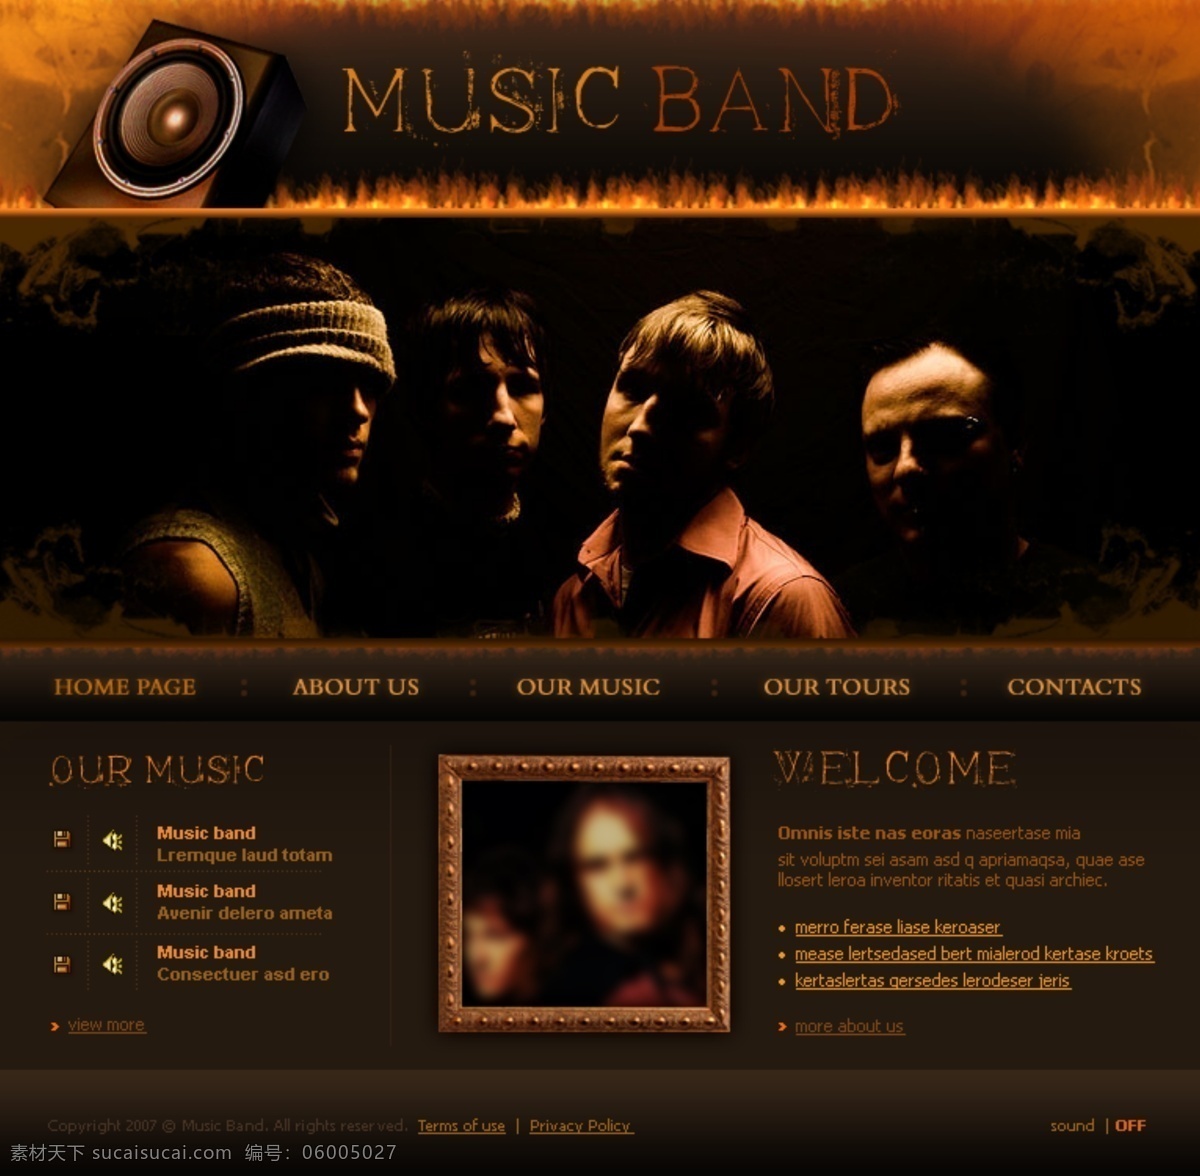 国外 乐队音乐 制作 网页设计 乐队 音乐 网页 web 界面设计 英文模板 黑色